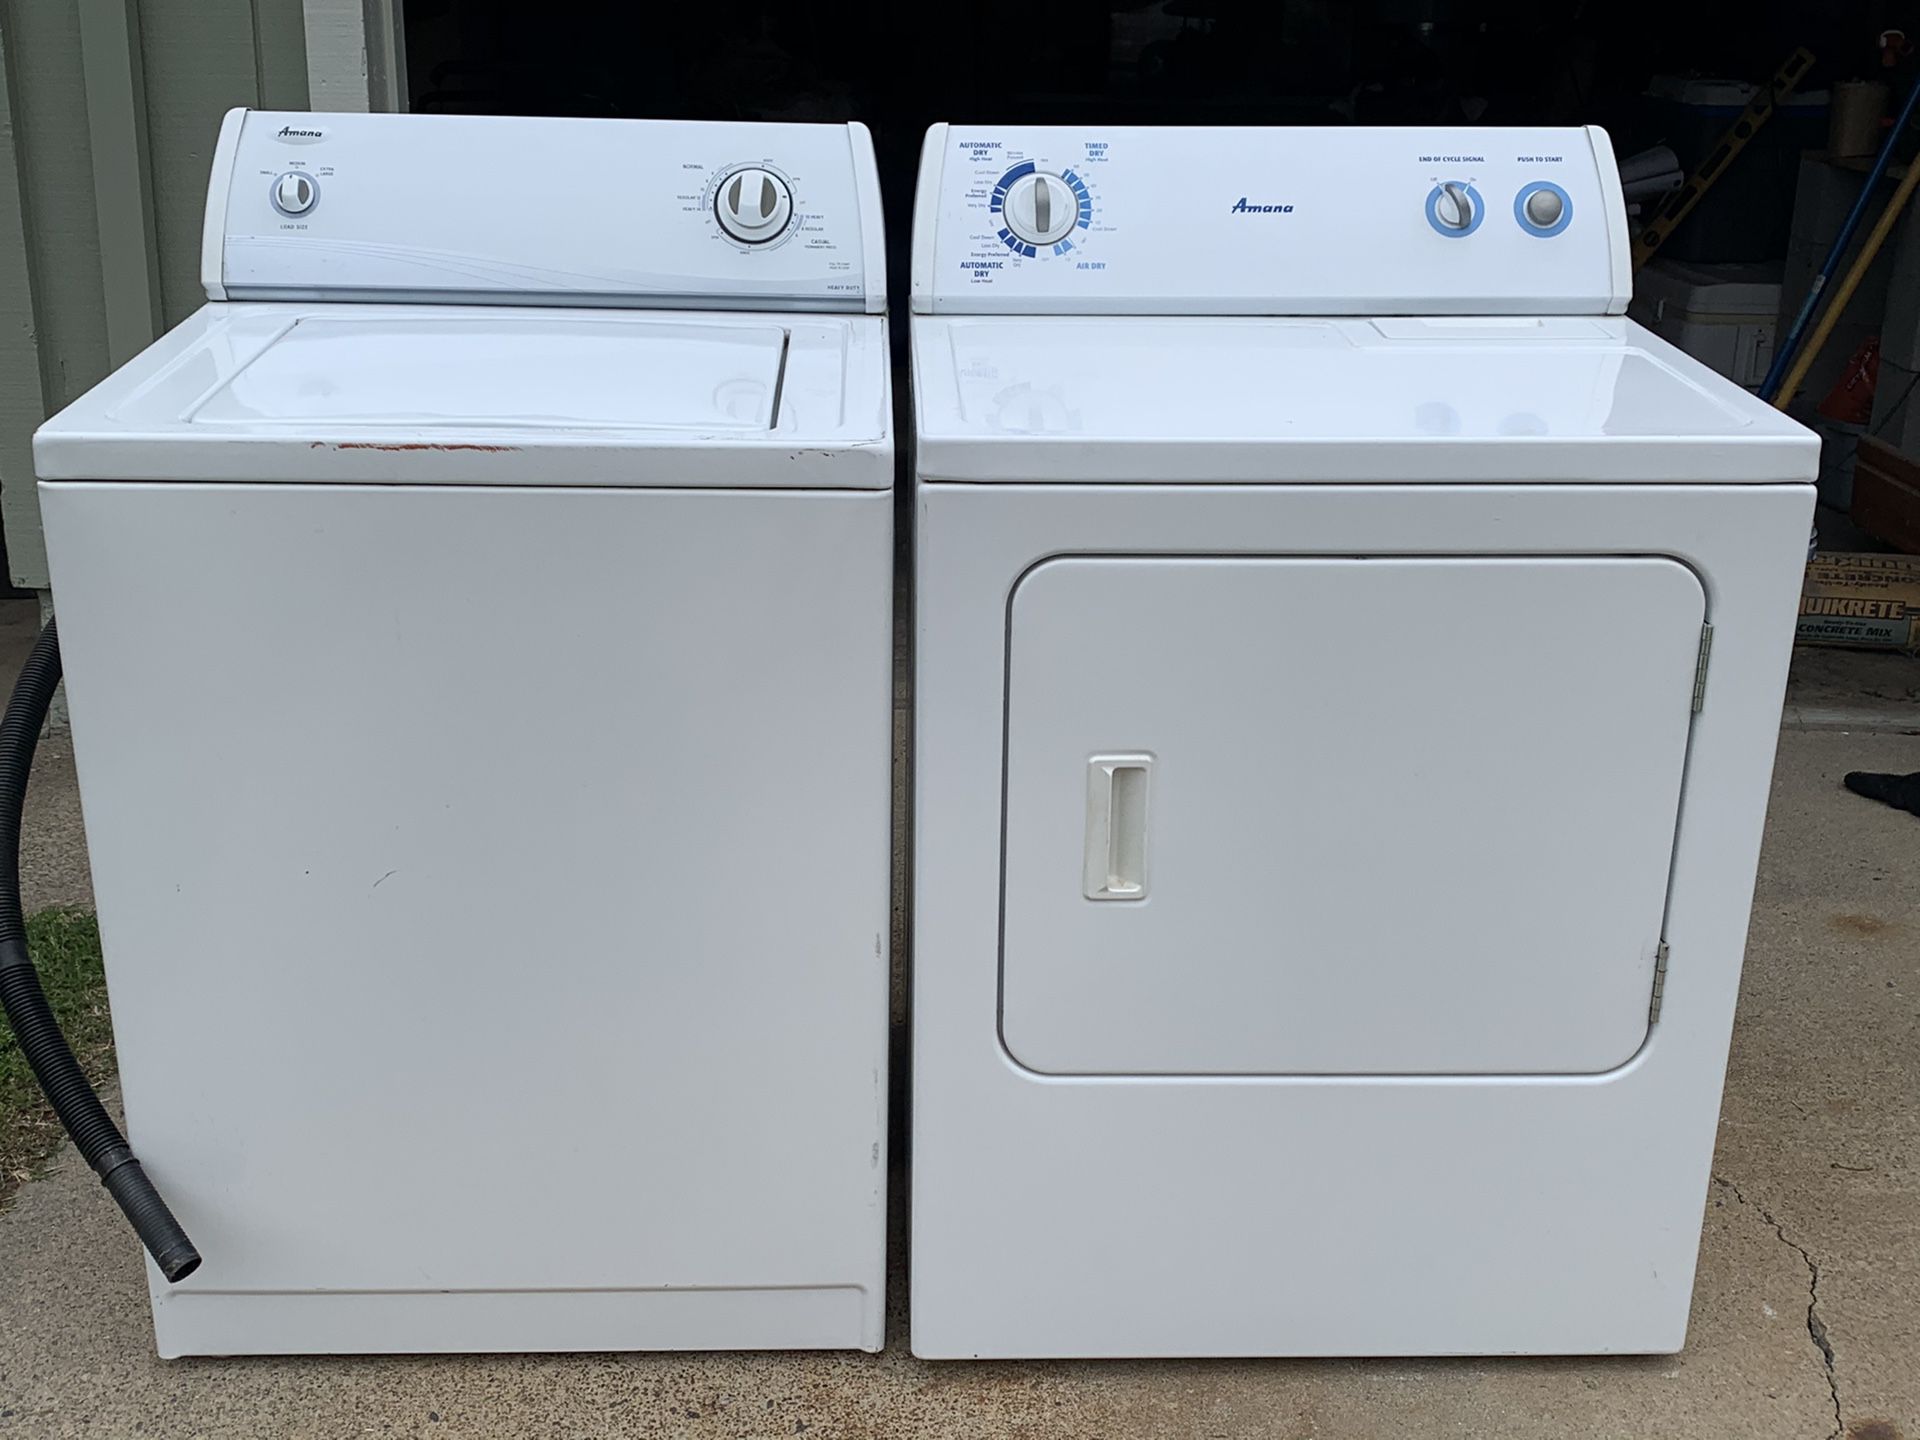 Amana washer dryer set